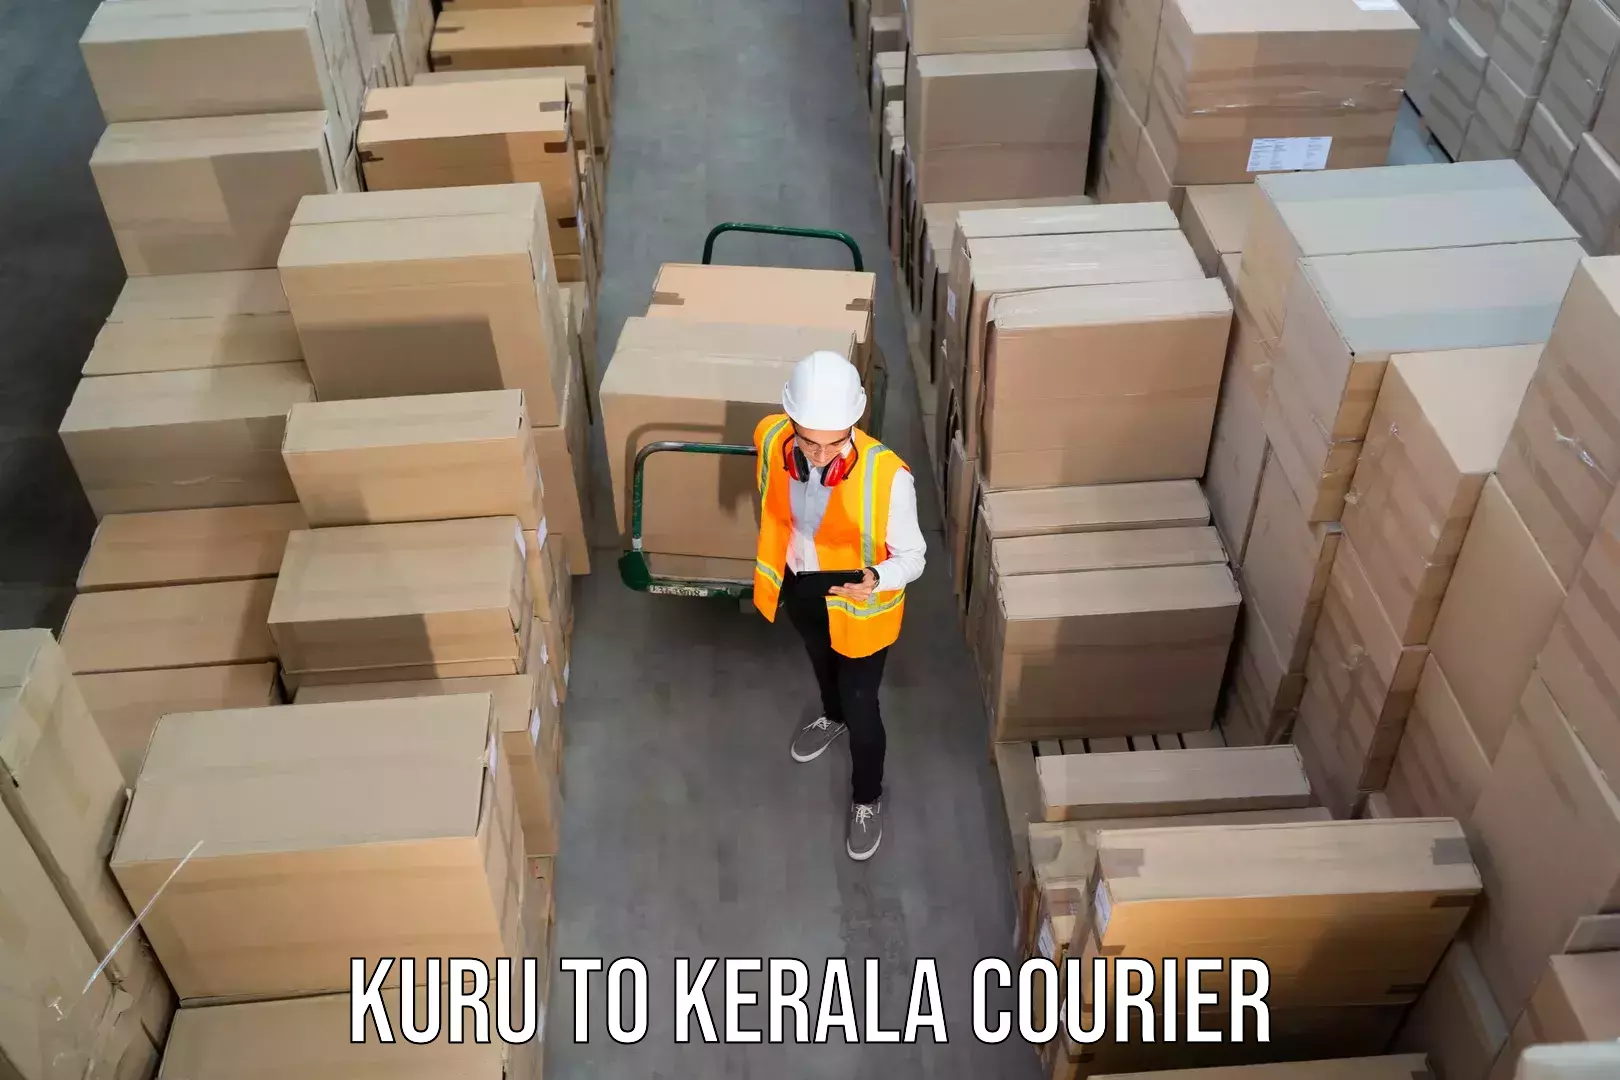 Global shipping solutions Kuru to Panthalam